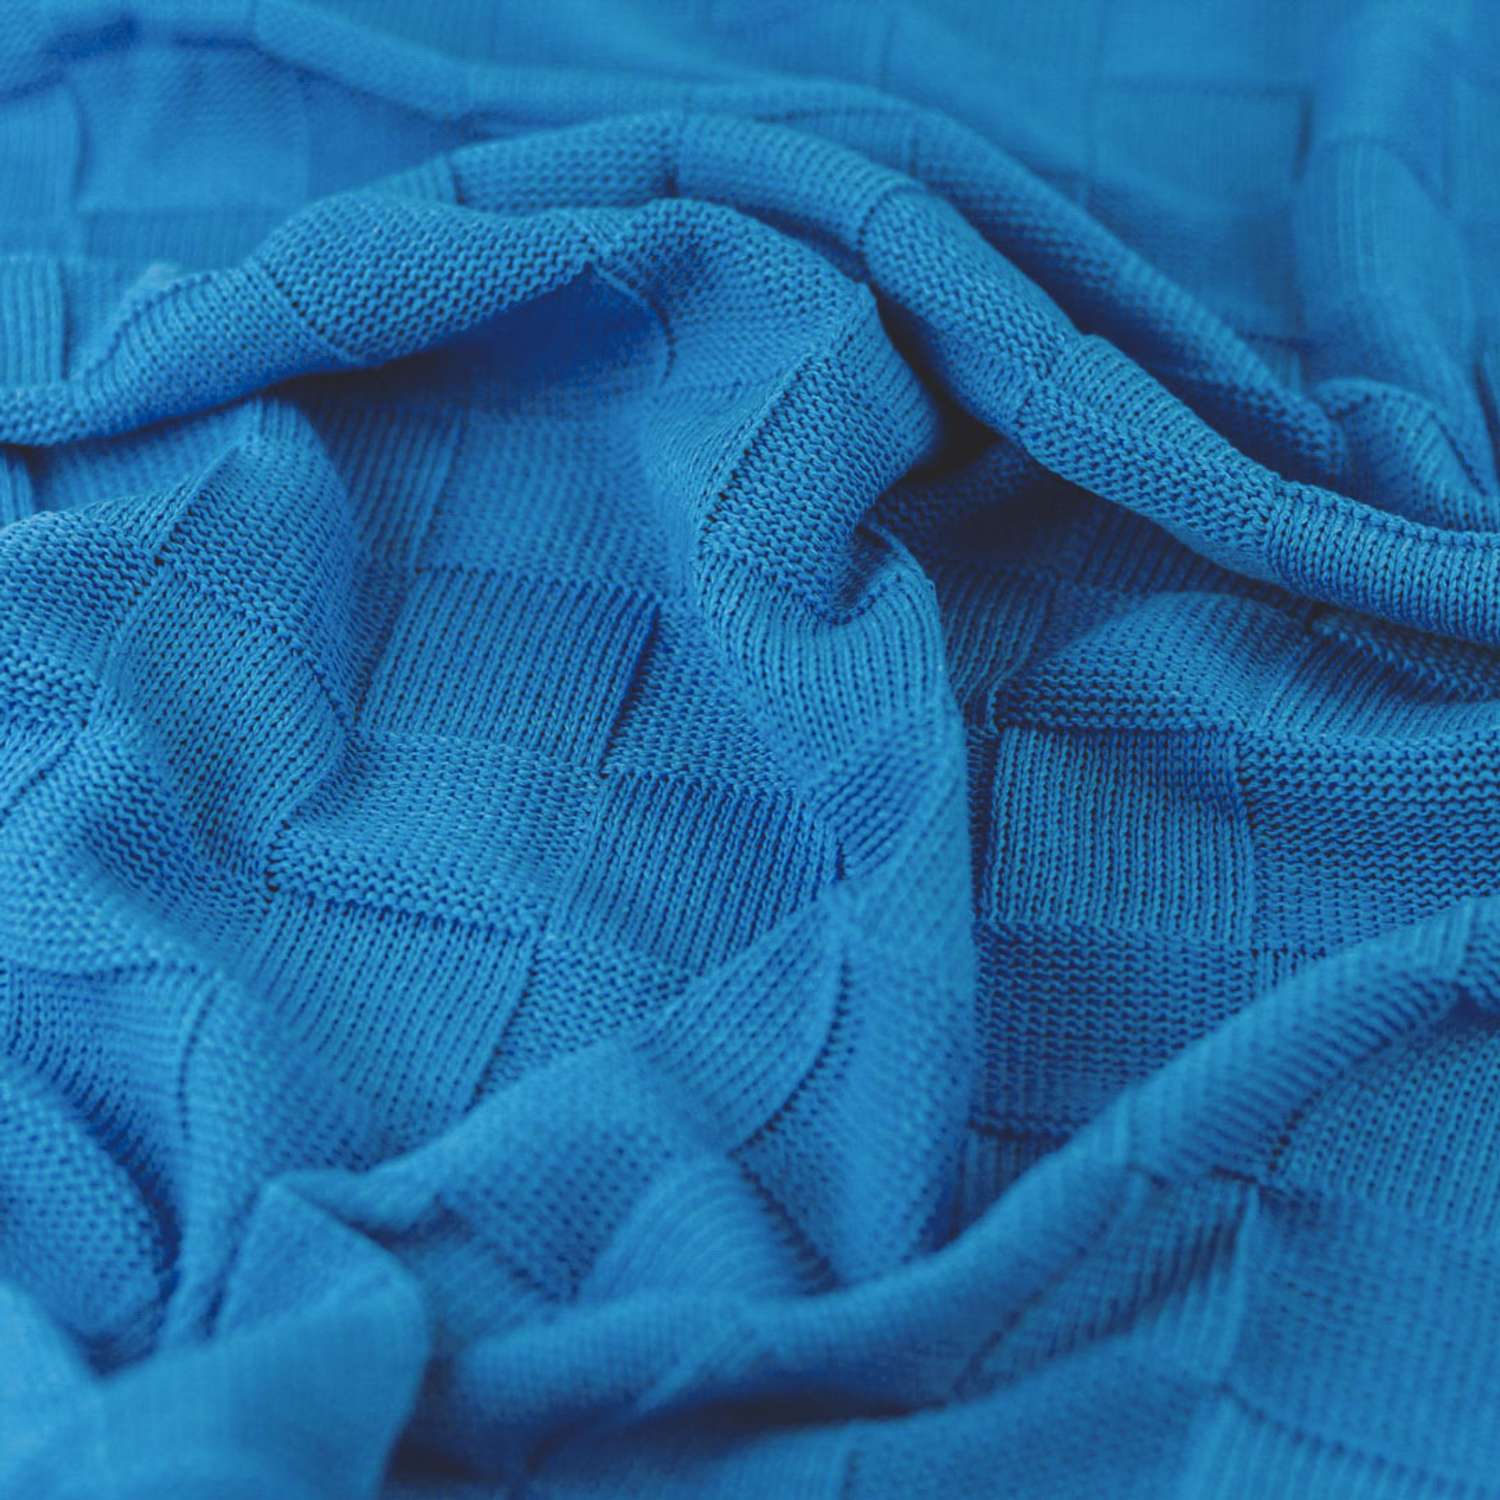 Плед-покрывало детский вязаный WARM WHIFF D-08 голубой конверт на выписку одеяло в коляску в кроватку на лето 90x110 - фото 4